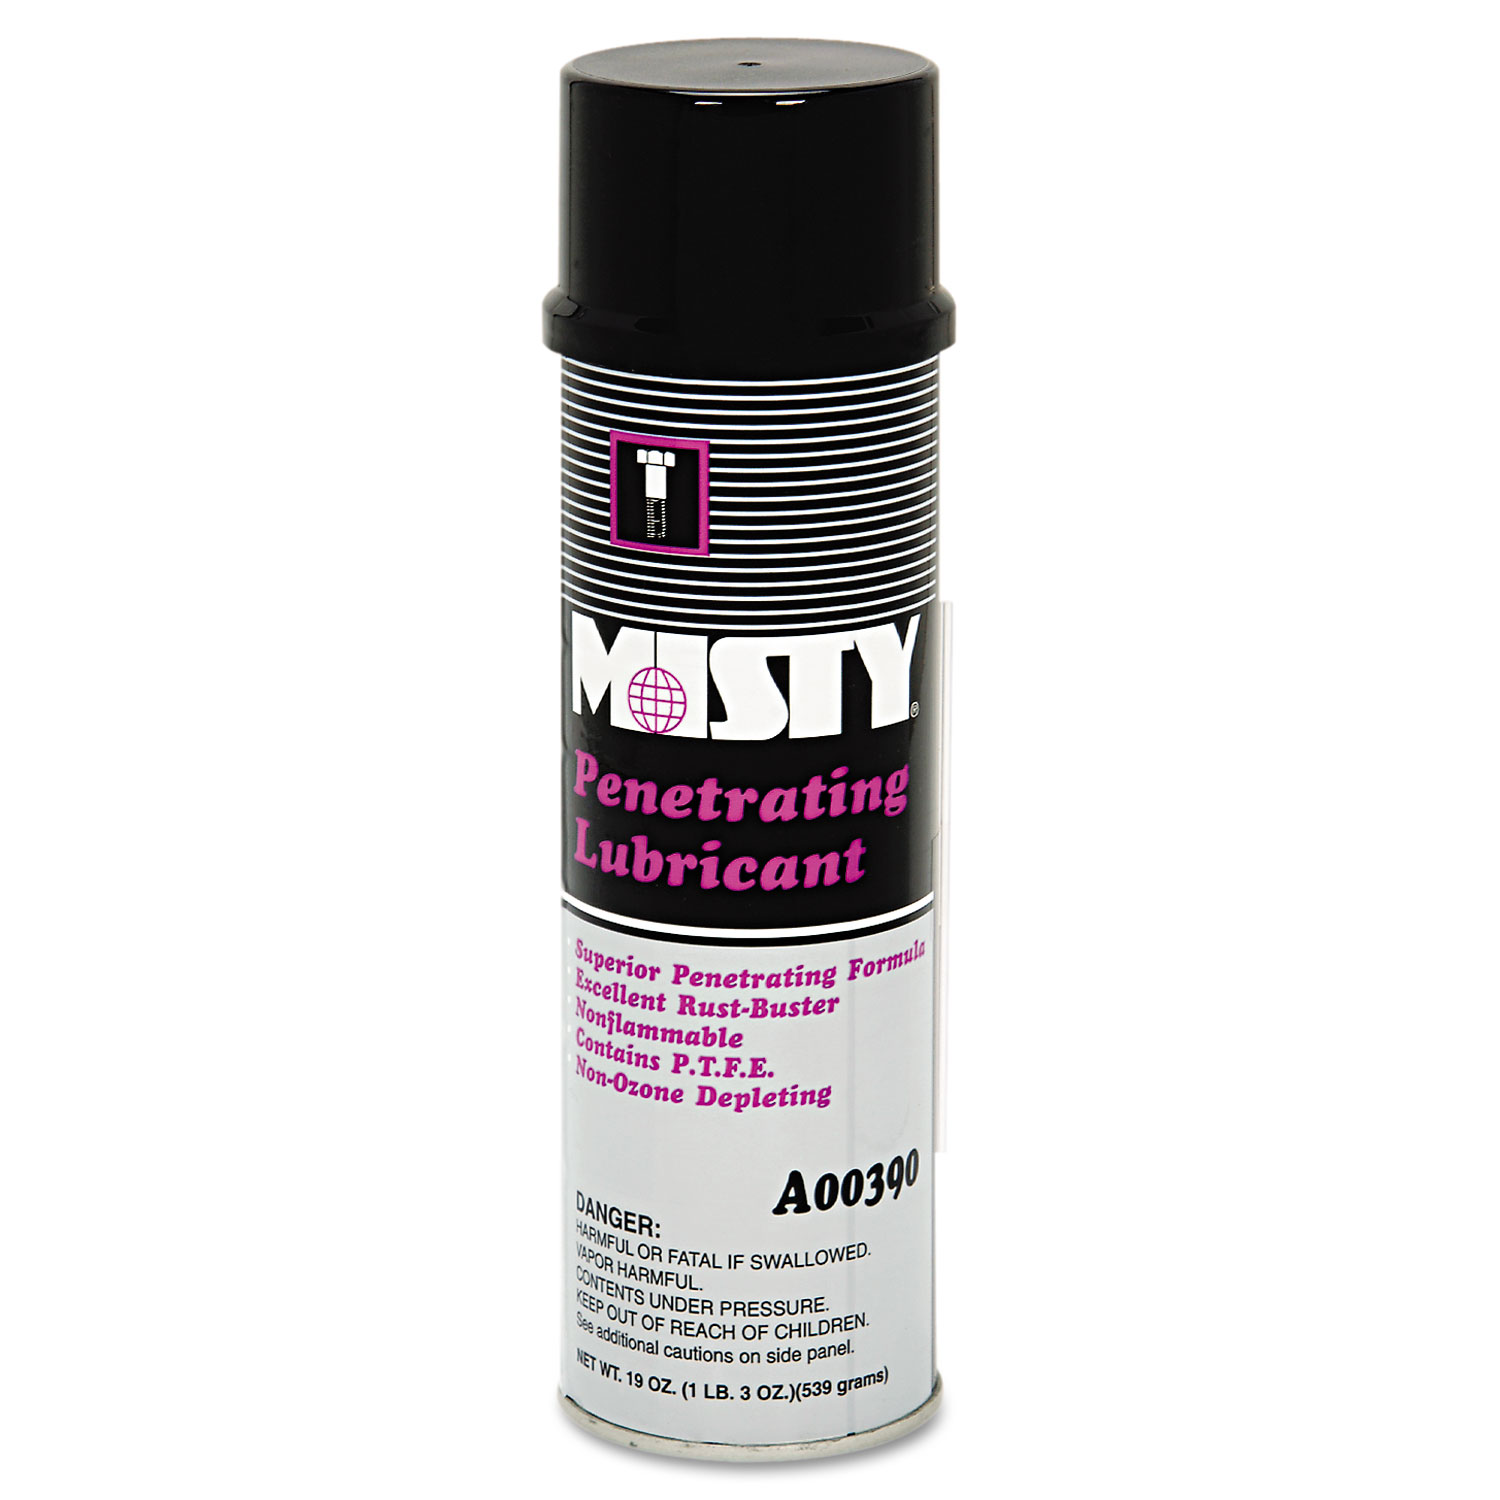  Misty 1002456 Penetrating Lubricant Spray, 19-oz. Aerosol Can (AMR1002456) 